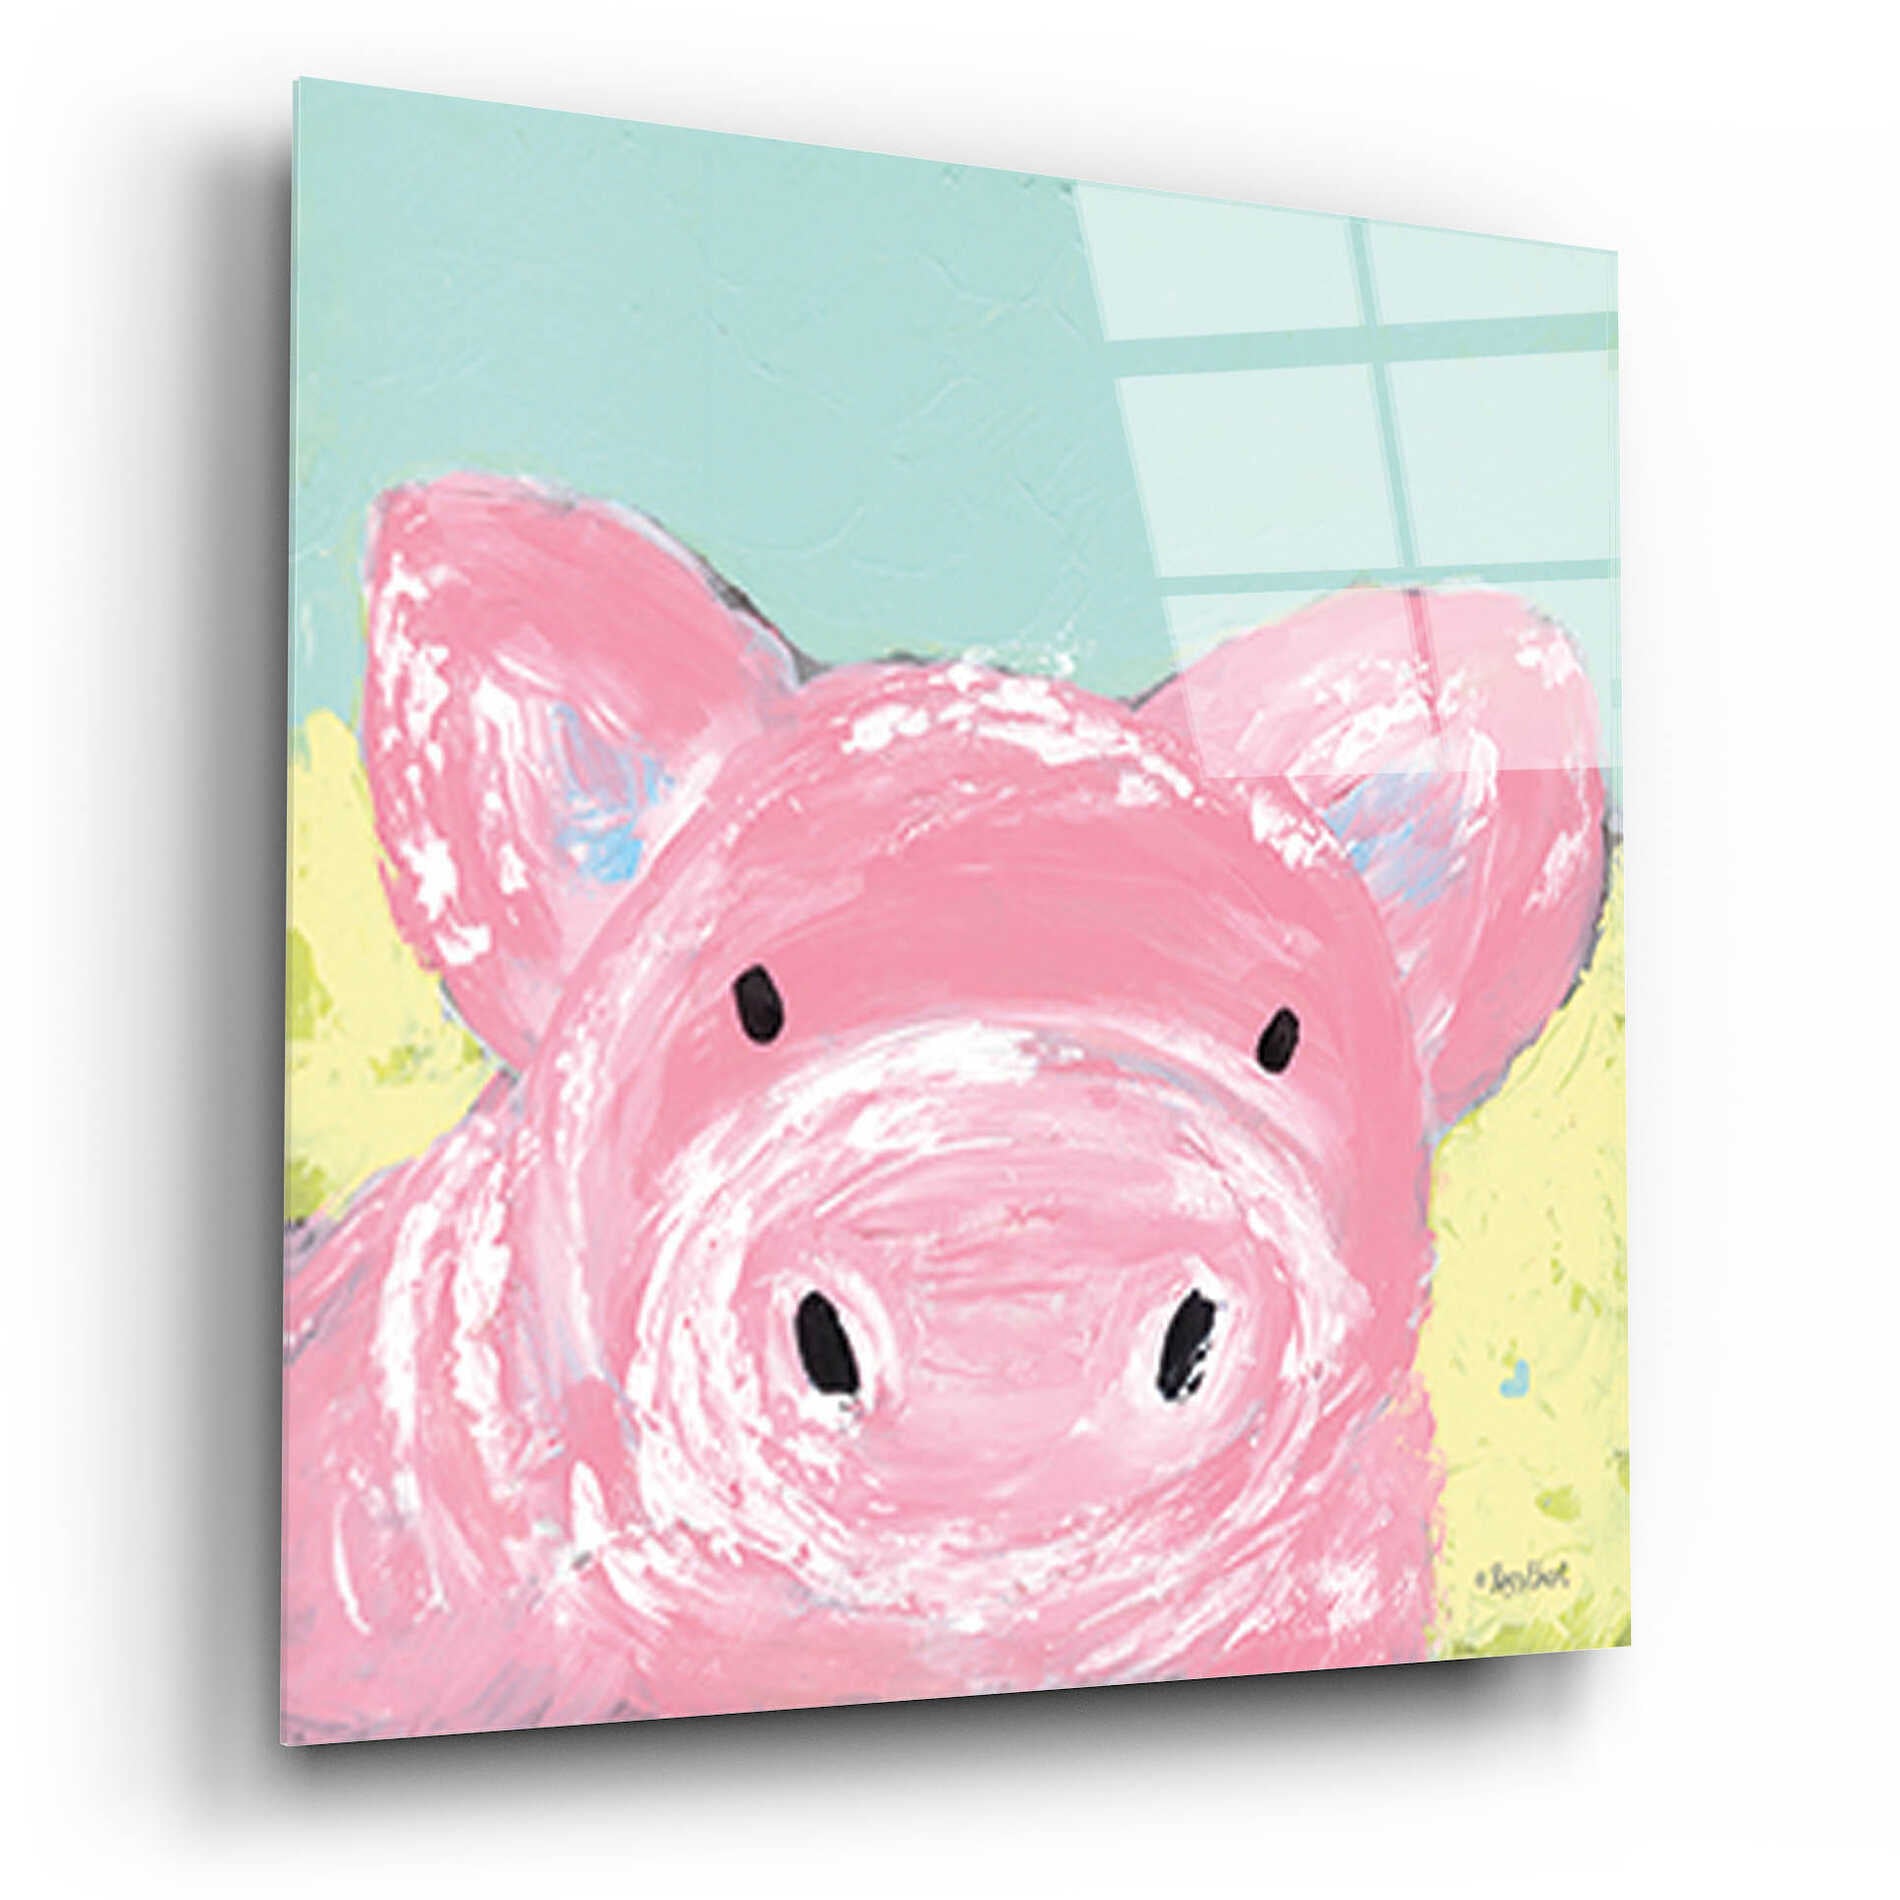 Epic Art 'Oink' by Roey Ebert, Acrylic Glass Wall Art,12x12